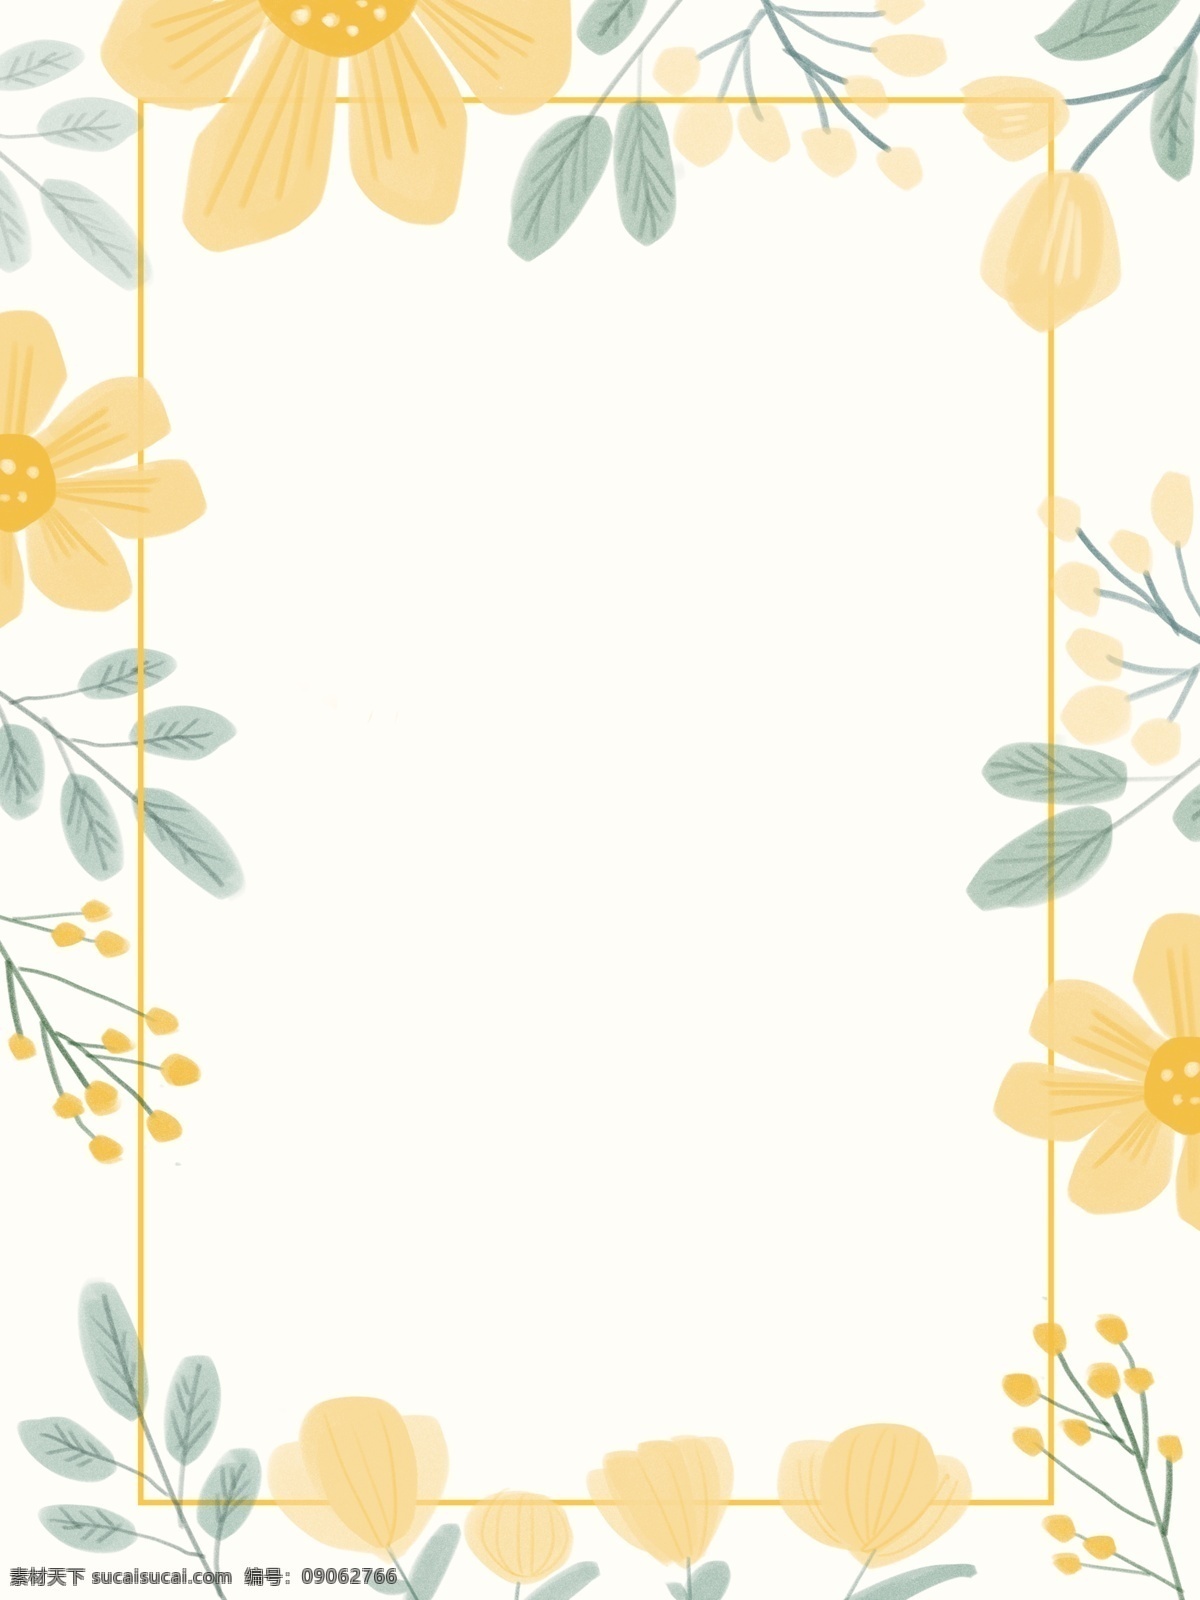 清新 婚礼 边框 花朵 手绘 背景 清新可爱自然 婚礼边框 黄色花朵 小碎花 灰色系 可爱 温暖 黄色